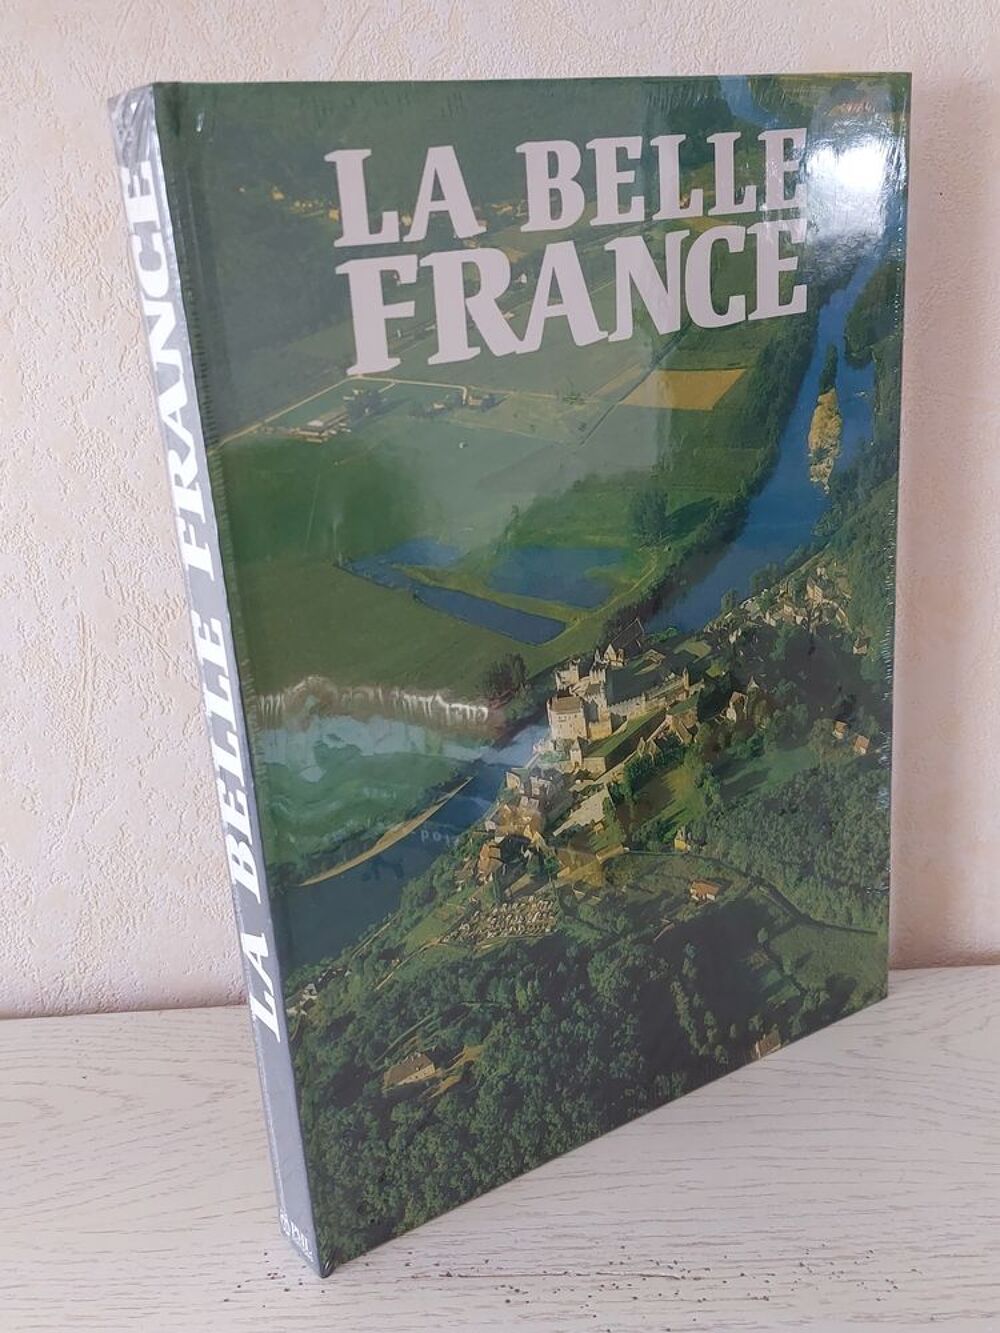 LA BELLE FRANCE
Livres et BD